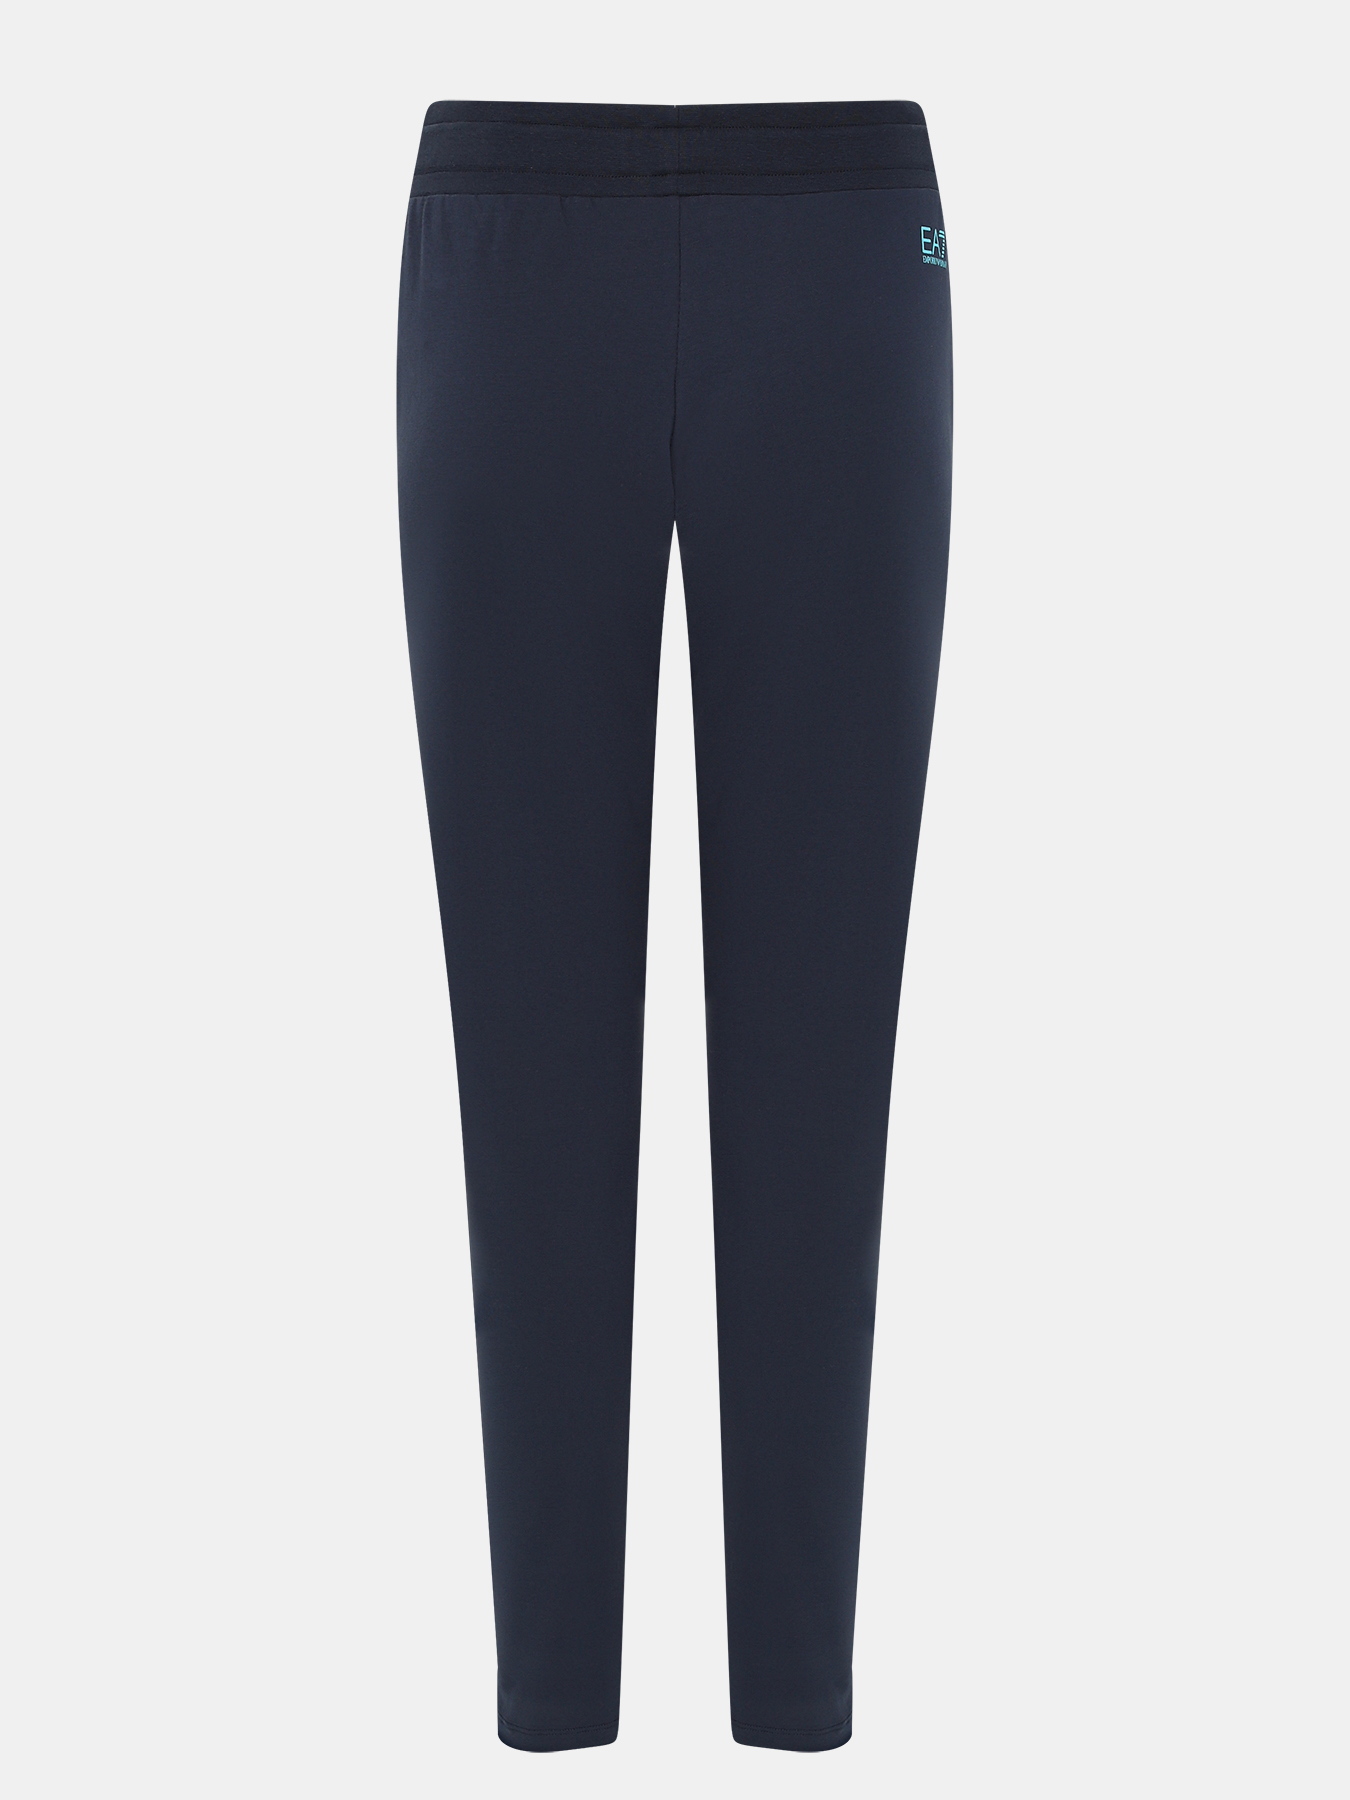 Спортивные брюки EA7 Emporio Armani 393991-044, цвет темно-синий, размер 46-48 - фото 3